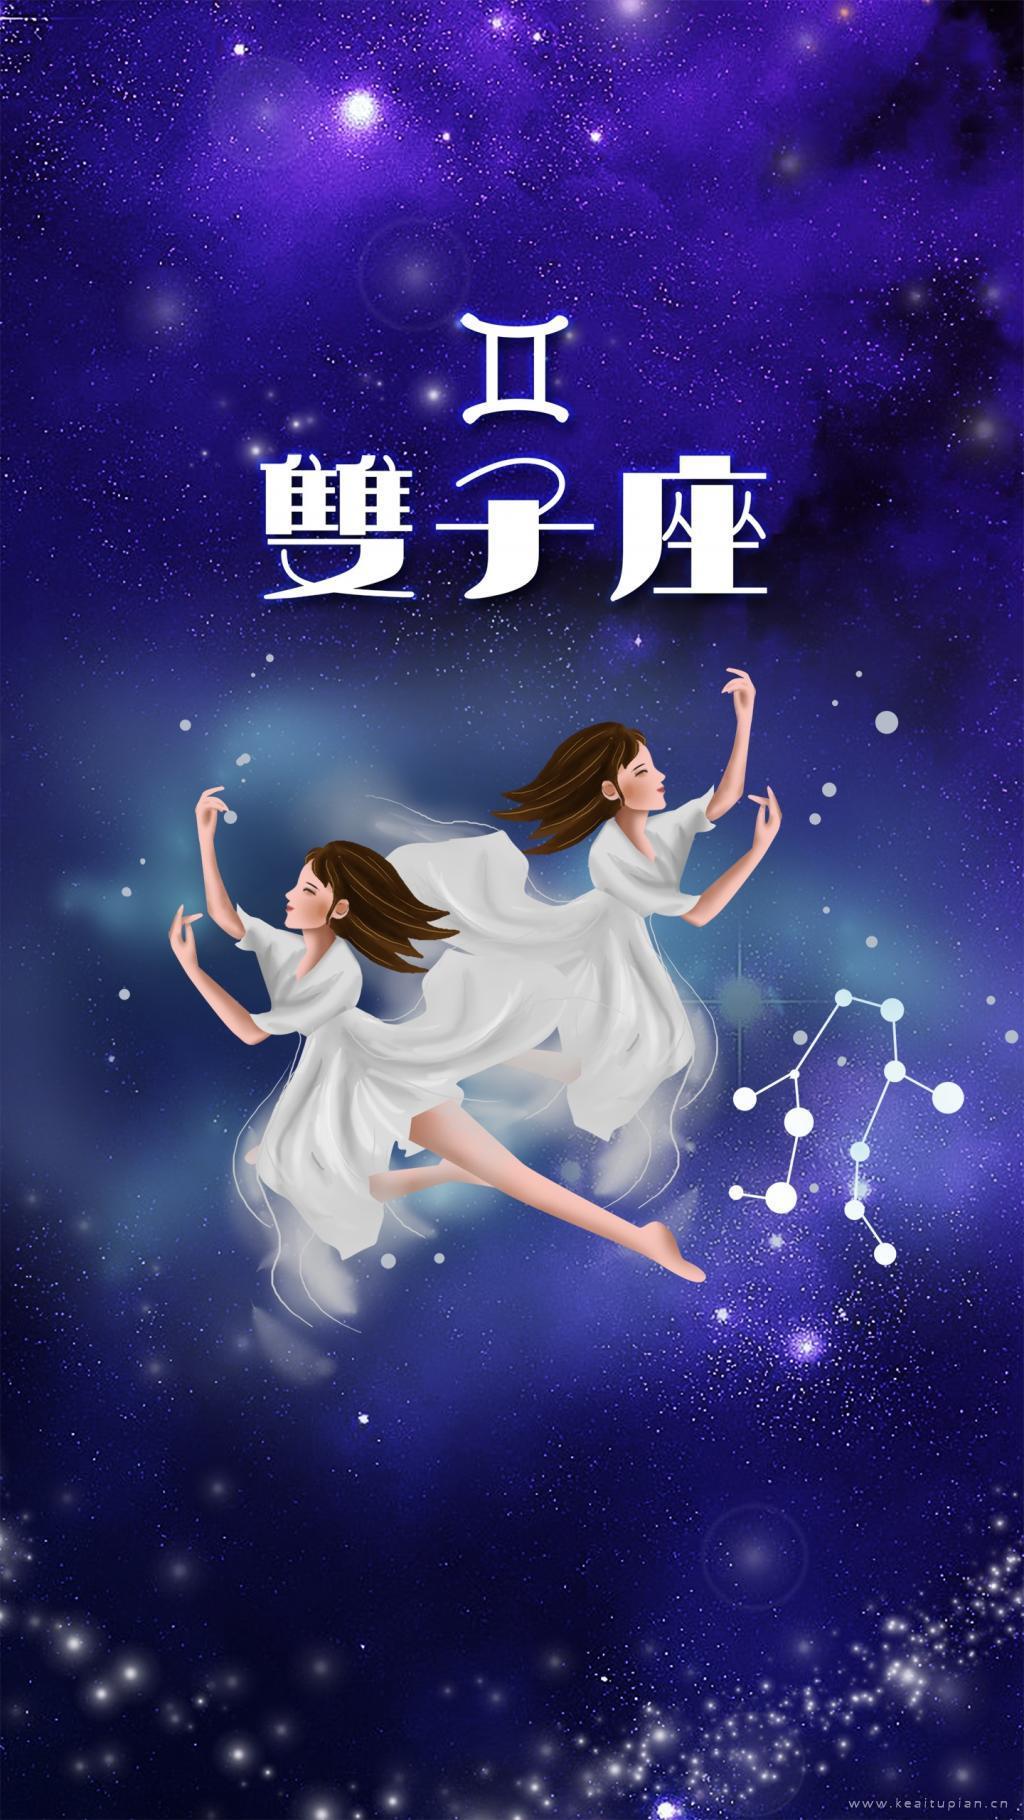 白衣双子座少女在星空中跳舞卡通文字图片